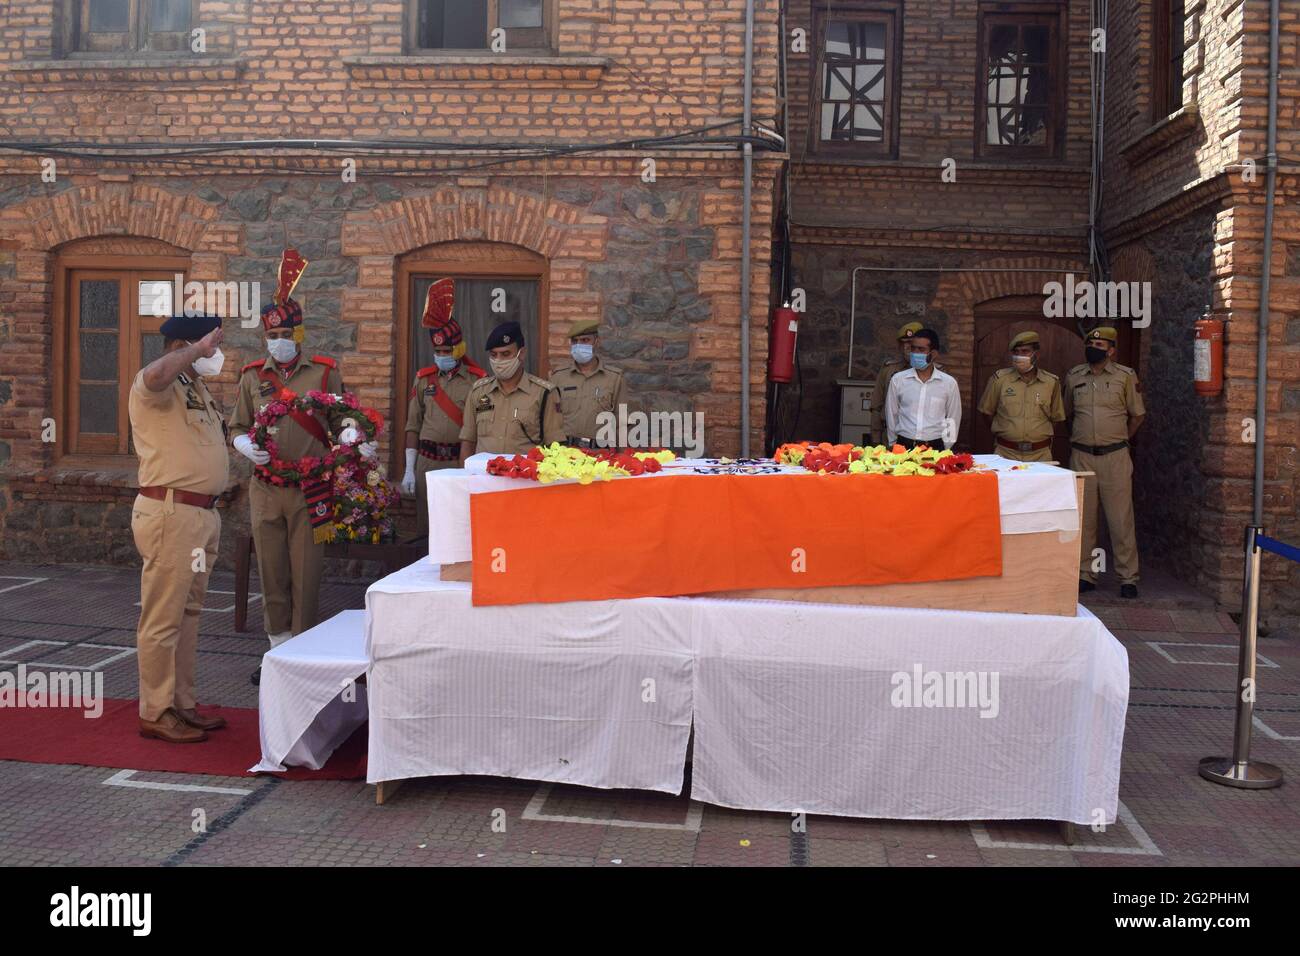 Sopore, Kashmir. 12 Giugno 2021. Cerimonia di deposizione di due poliziotti uccisi. Almeno due addetti alla sicurezza e due civili sono stati uccisi in un attacco militante nel Sopore del nord del Kashmir. Almeno altri tre, compreso un poliziotto, sono stati feriti nell'attacco. Hanno sparato ad un partito Unito della forza di polizia della riserva centrale (CRPF) e della polizia vicino a Chowk Sopore principale nel distretto di Baramulla di Jammu e Kashmir. Foto Stock